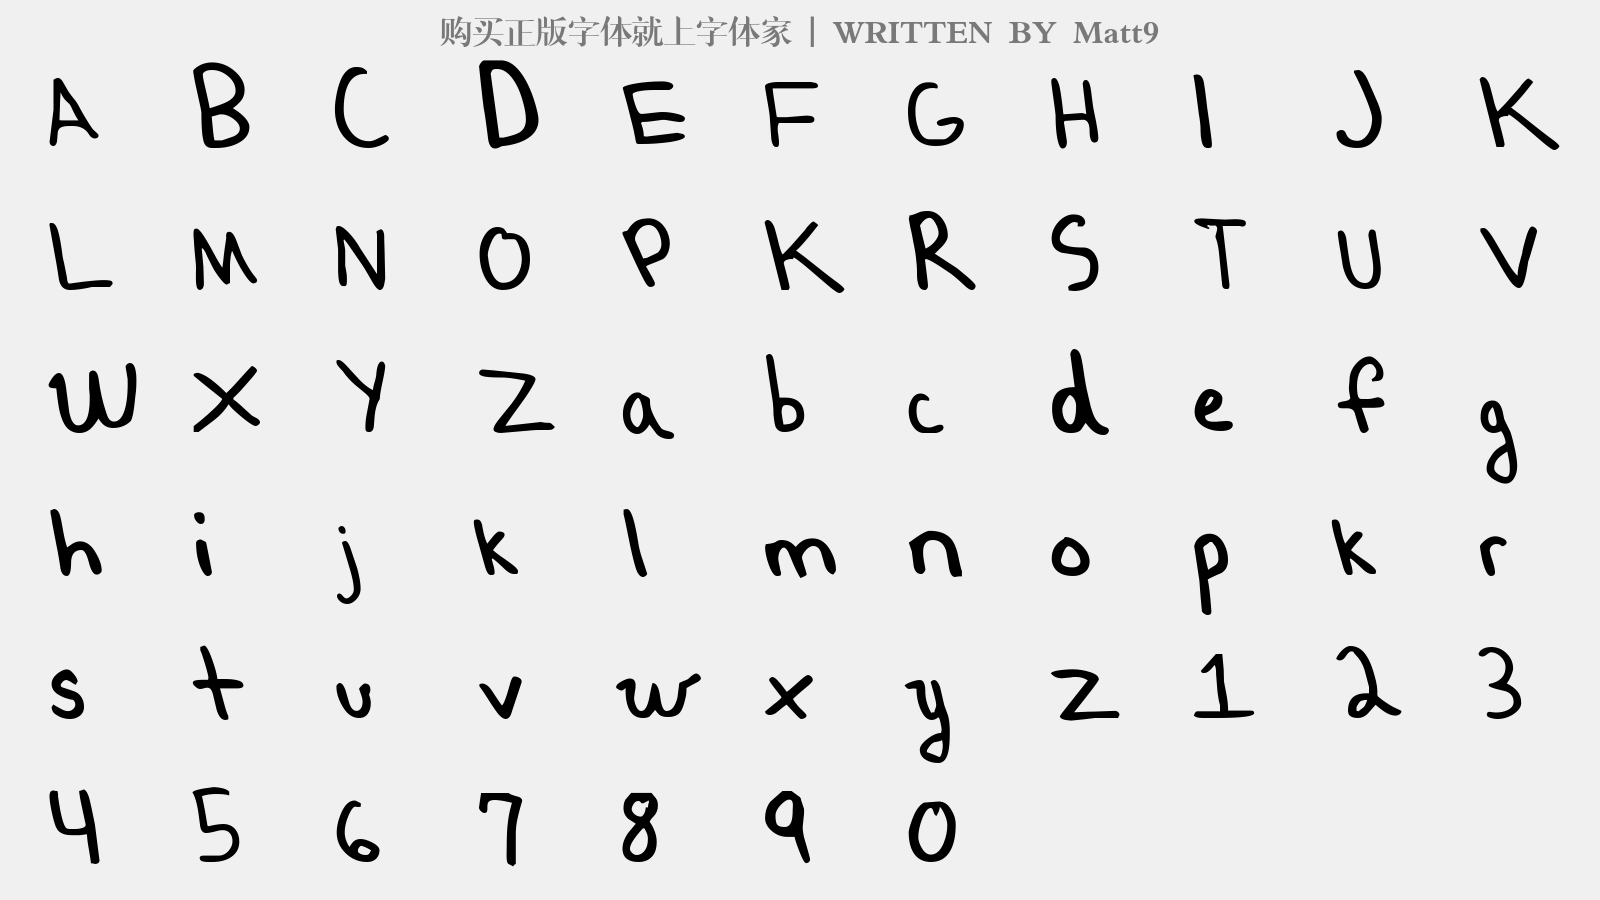 Matt9 - 大写字母/小写字母/数字